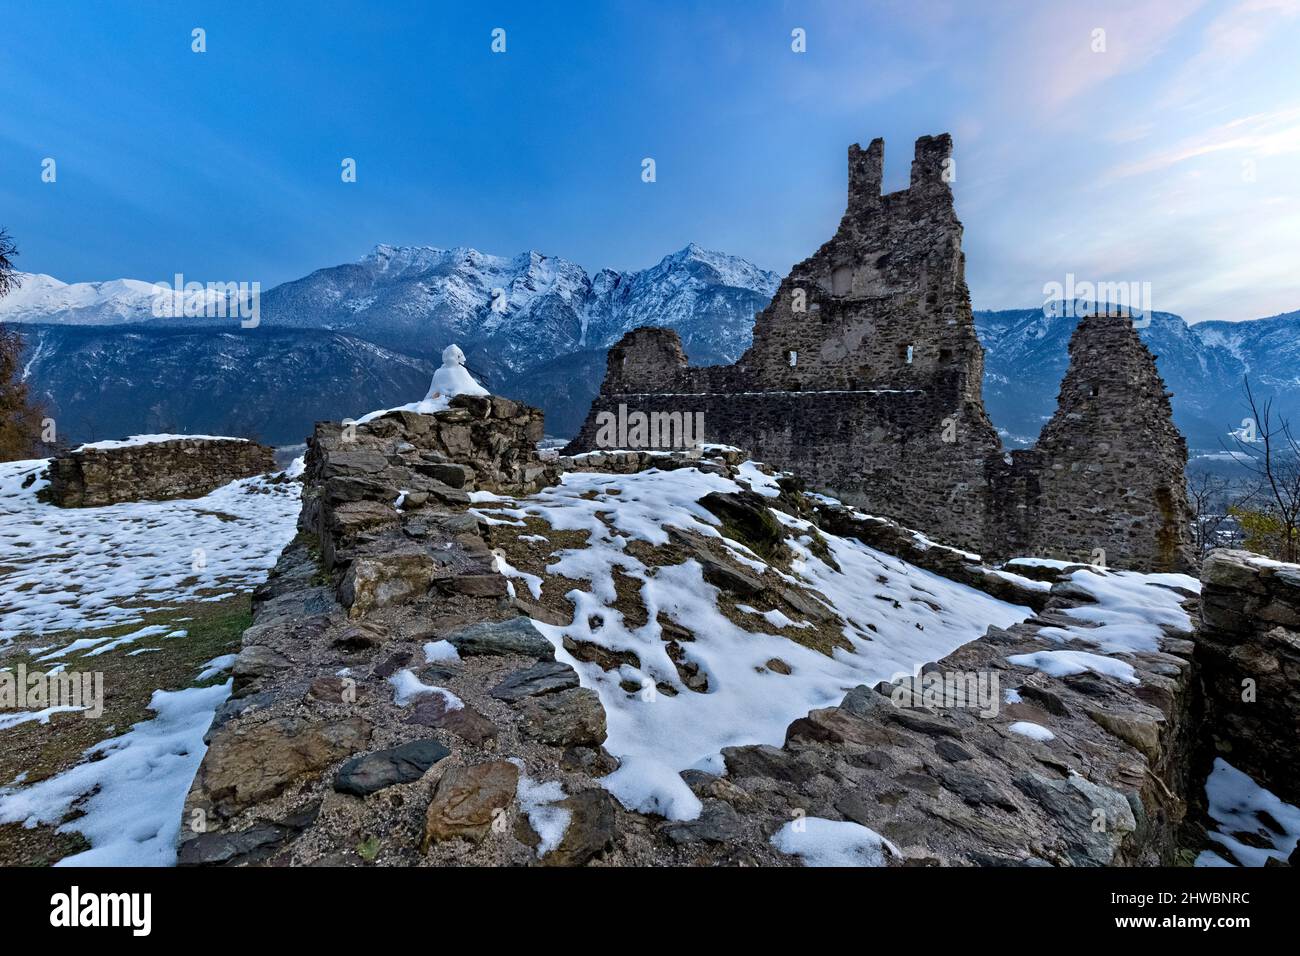 Les ruines crénelées du château de Selva et du mont Cima Vezzena en hiver. Levico terme, province de Trento, Trentin-Haut-Adige, Italie, Europe. Banque D'Images